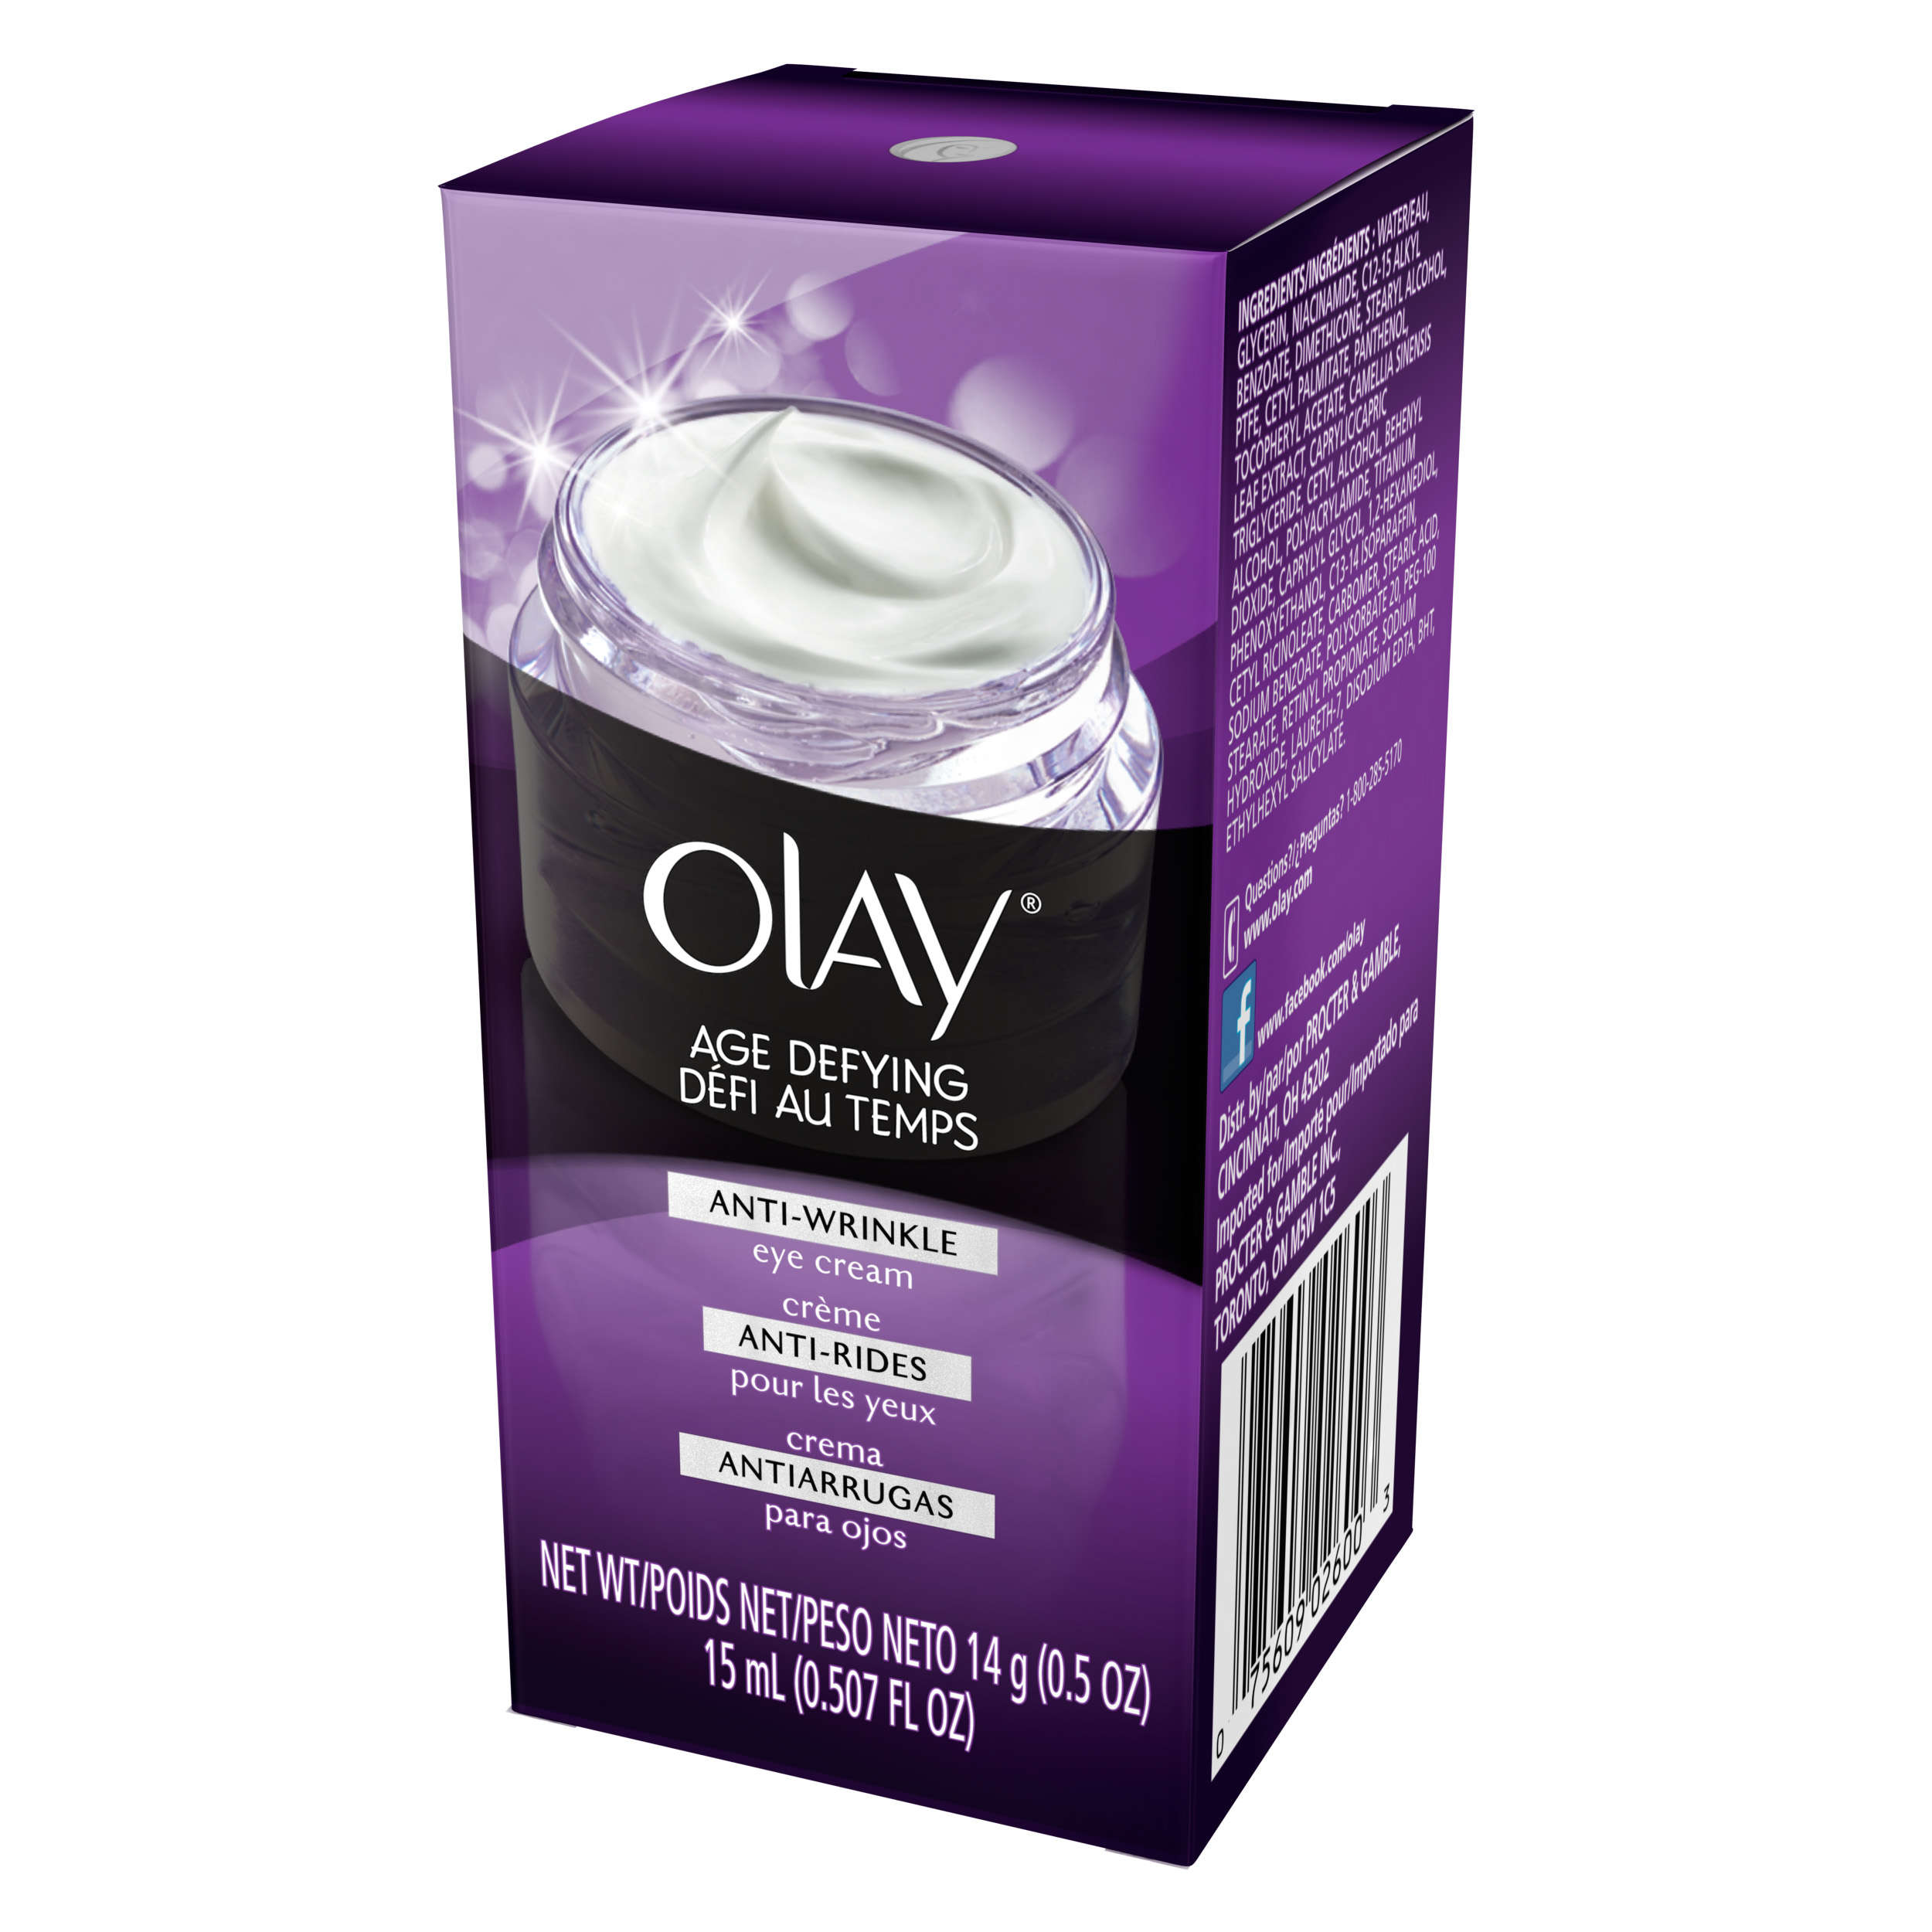 Olay Age Defying Anti-Wrinkle Eye Cream 14g (0.5 OZ) - image 4 of 6